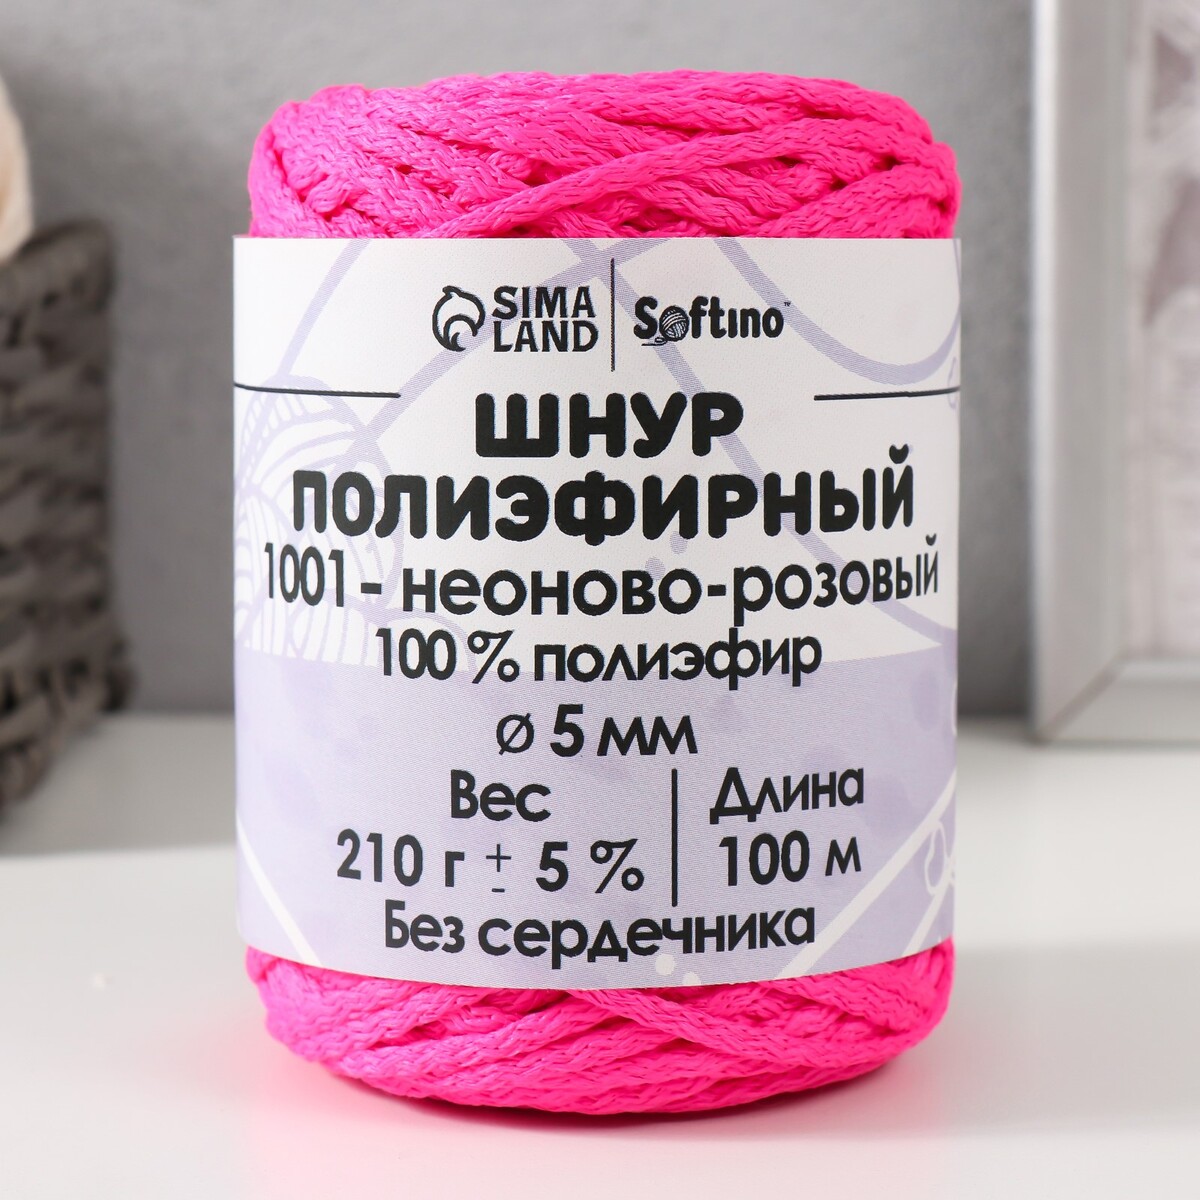 Шнур полиэфирный без сердечника 5 мм 100м/210г (+/- 5%) неоново-розовый-1001 1001 совет альпинисту